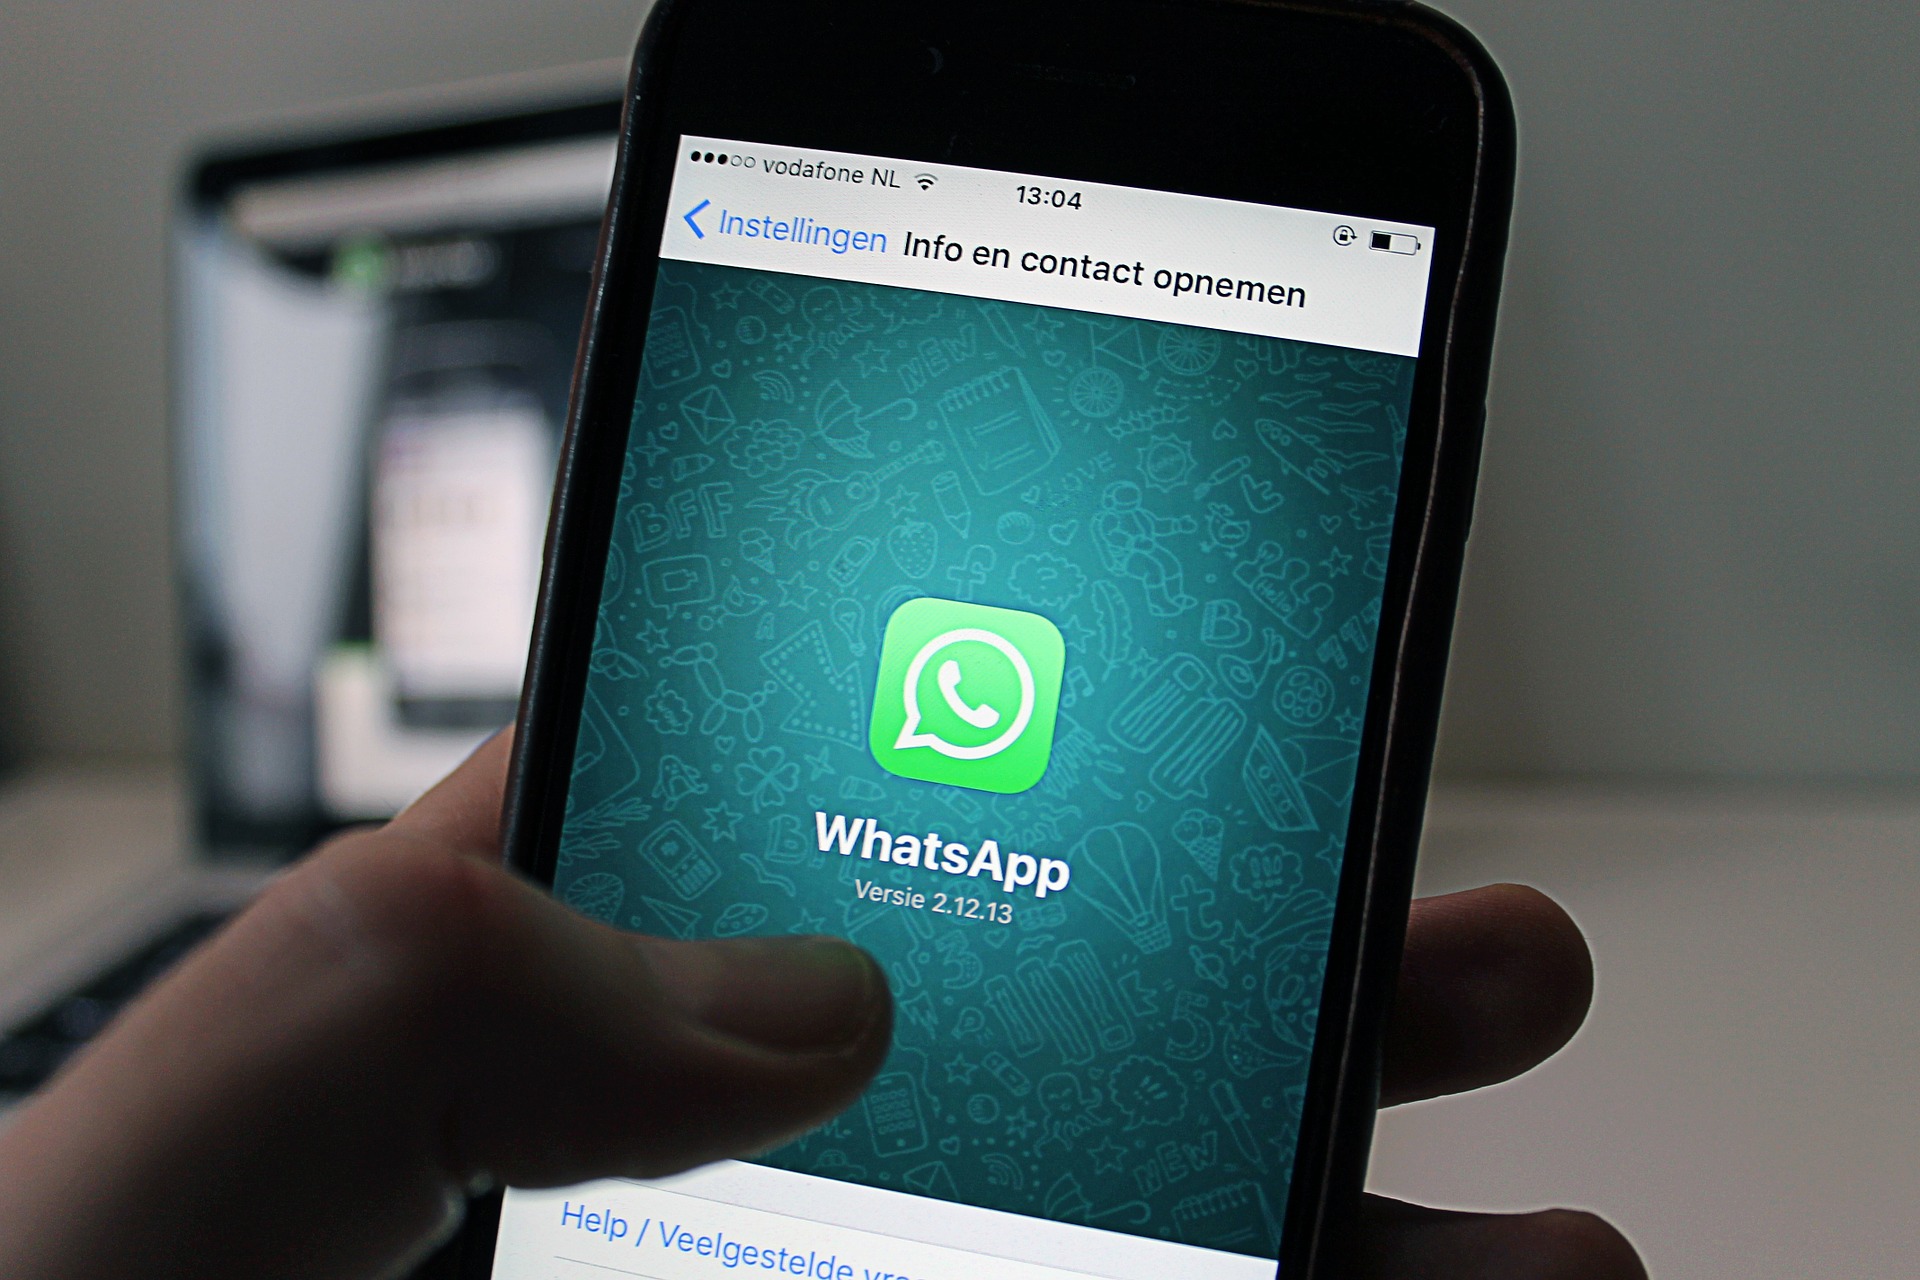 Semua ponsel tempat WhatsApp akan berhenti berfungsi pada tahun 2020